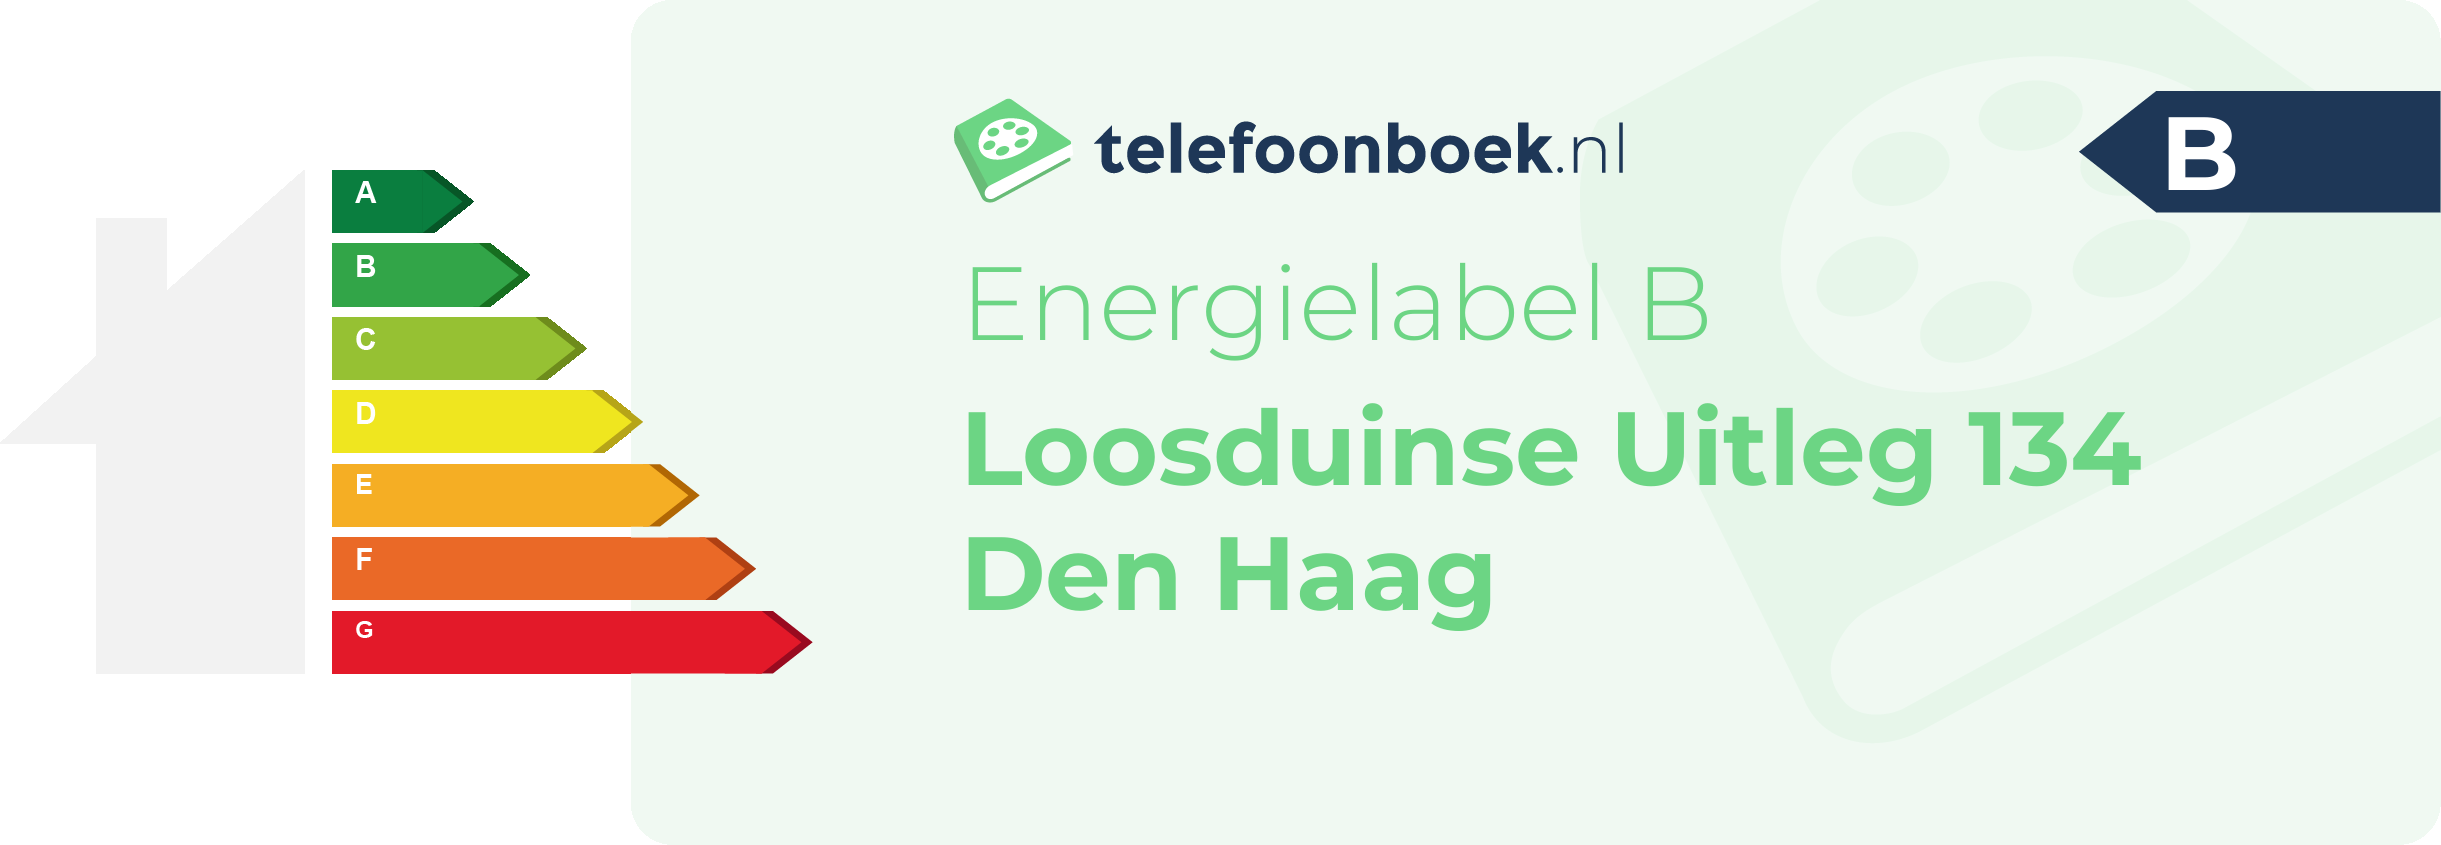 Energielabel Loosduinse Uitleg 134 Den Haag